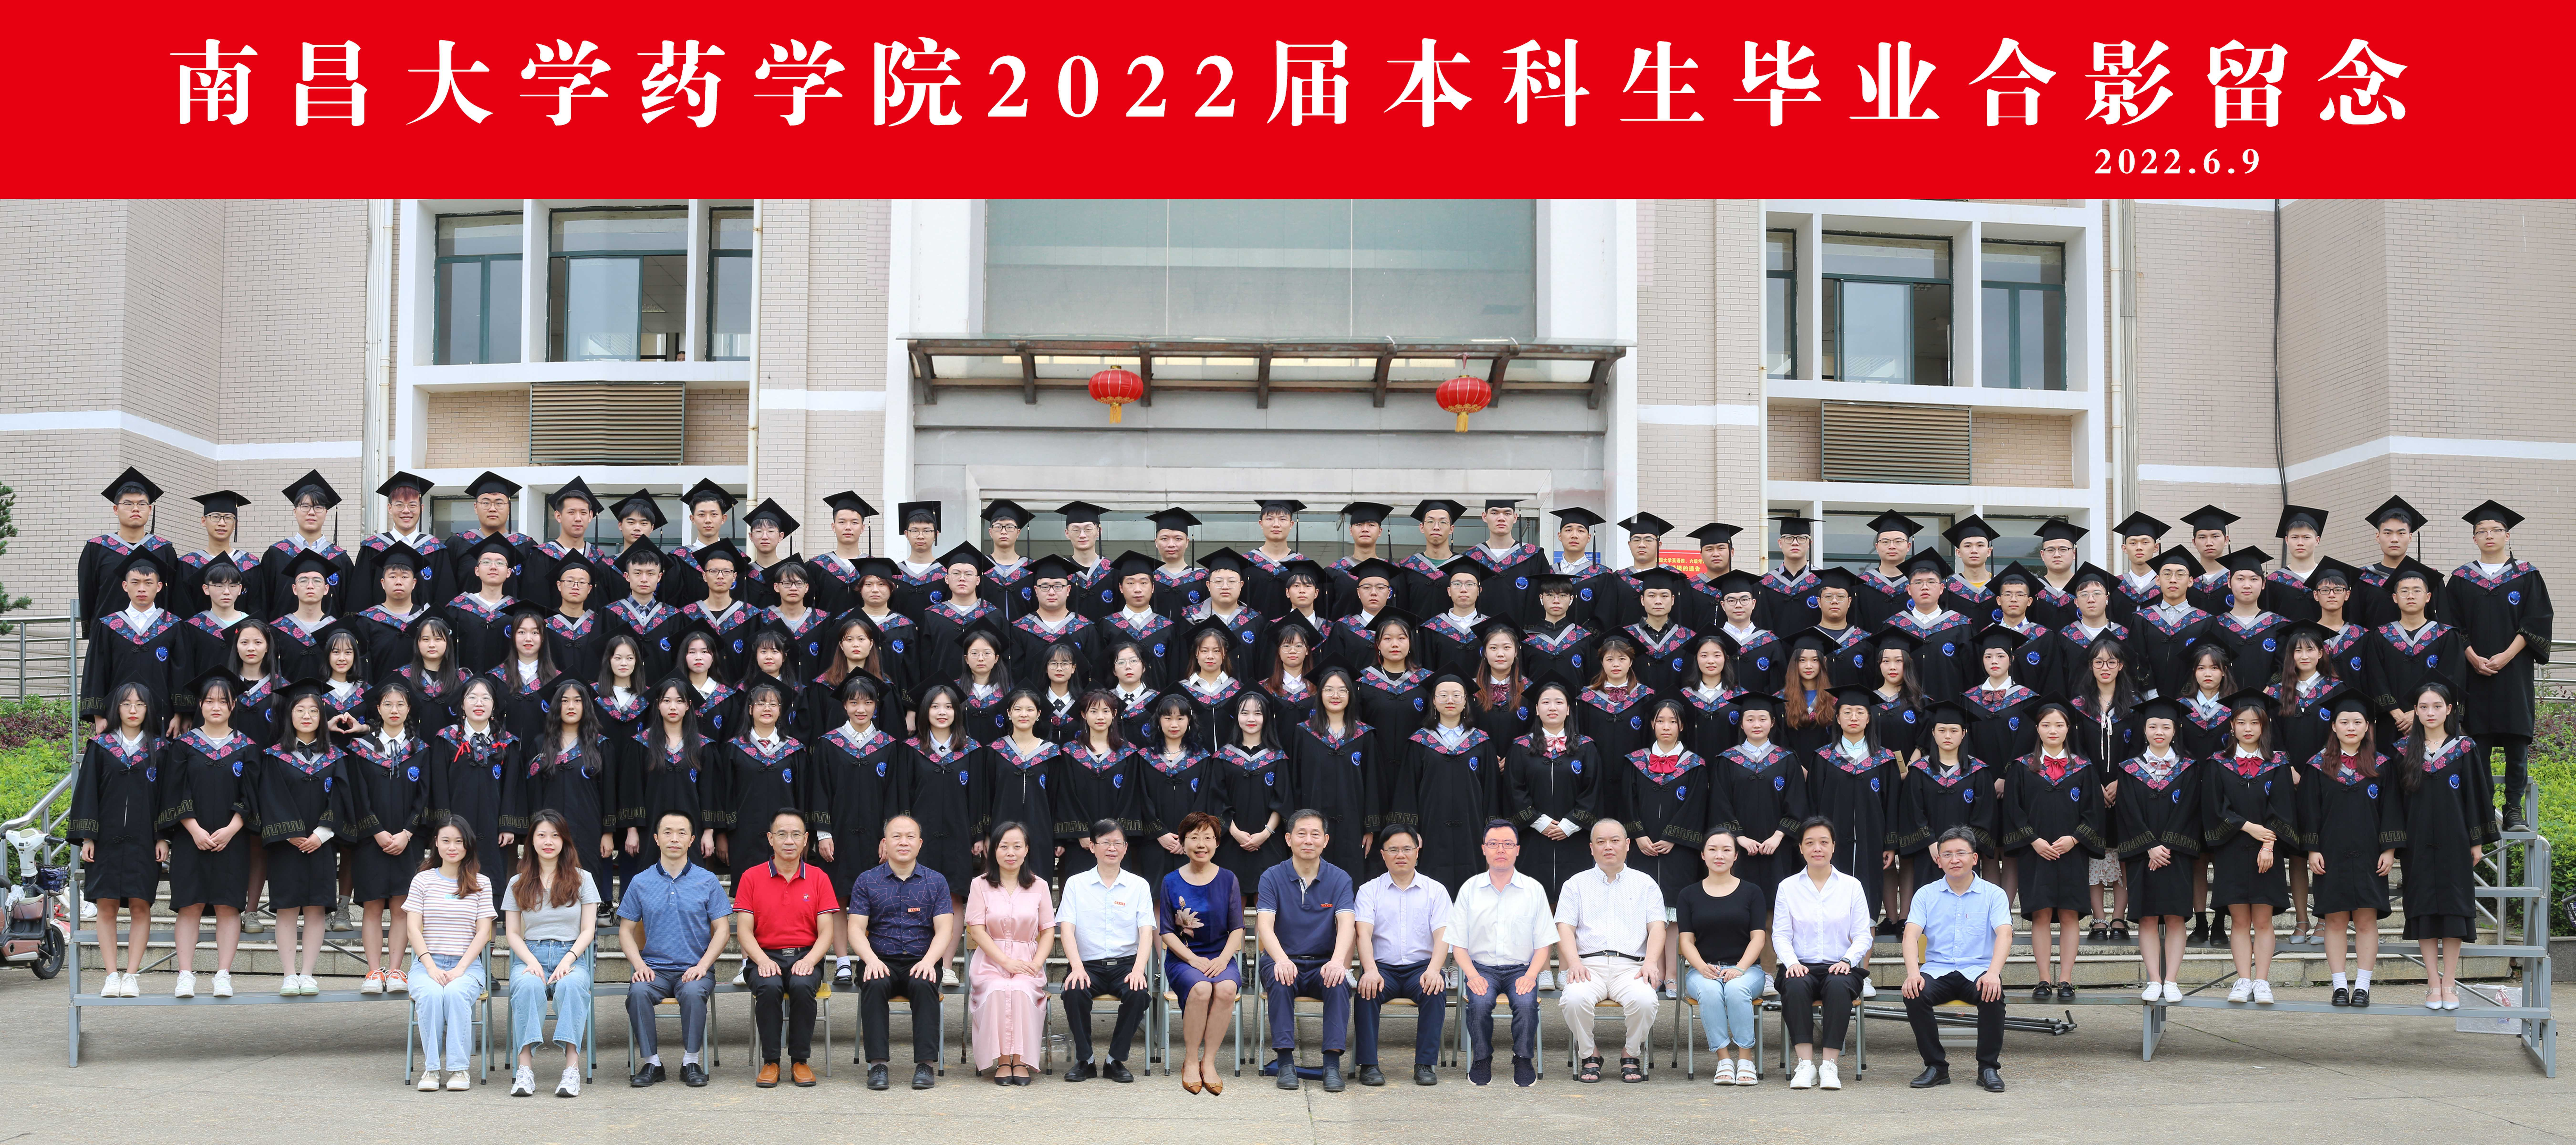 药学院2022届毕业生合影_new.jpg